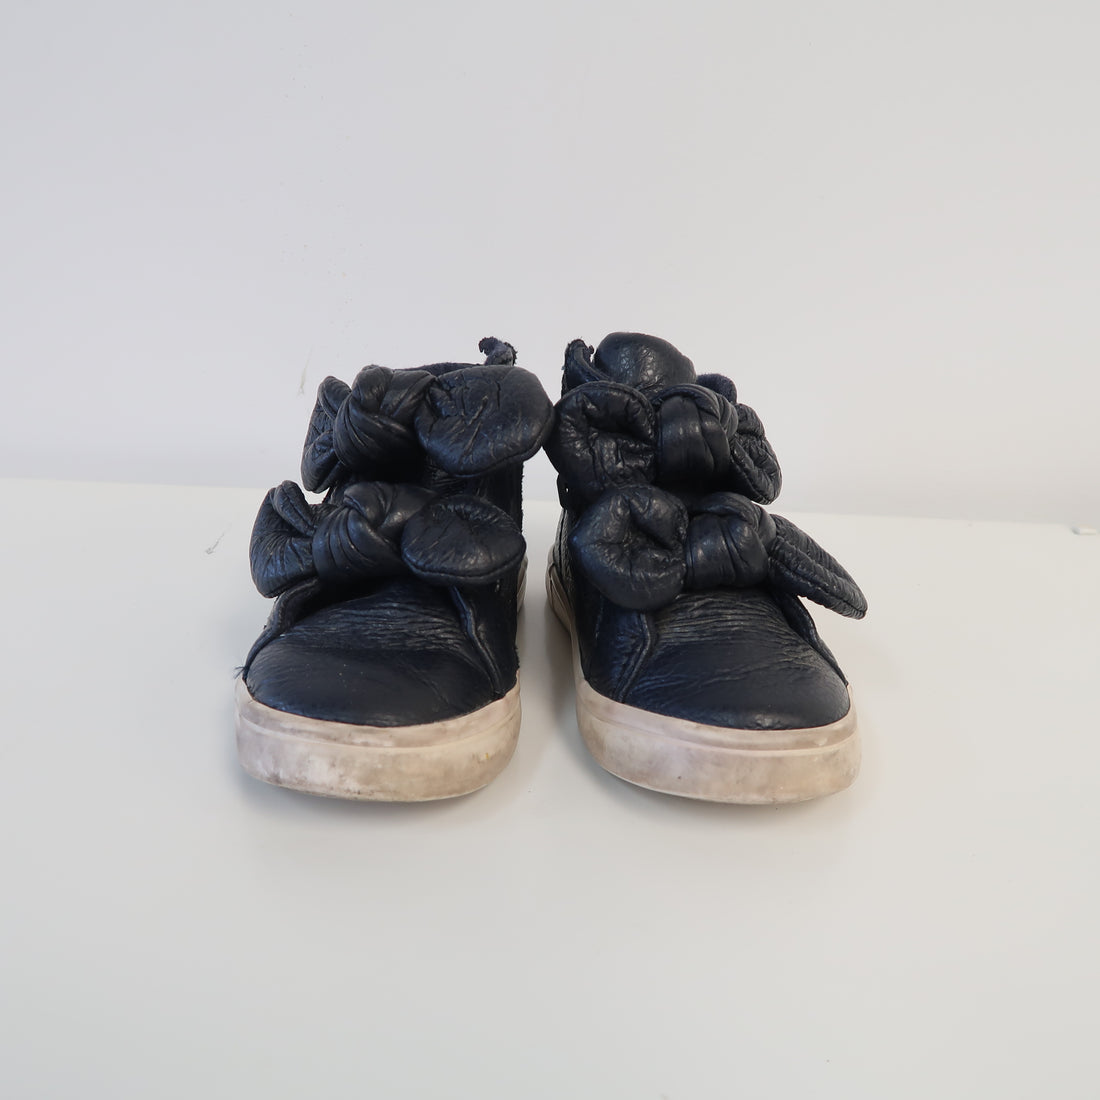 Zara - Shoes (Shoes - 6)